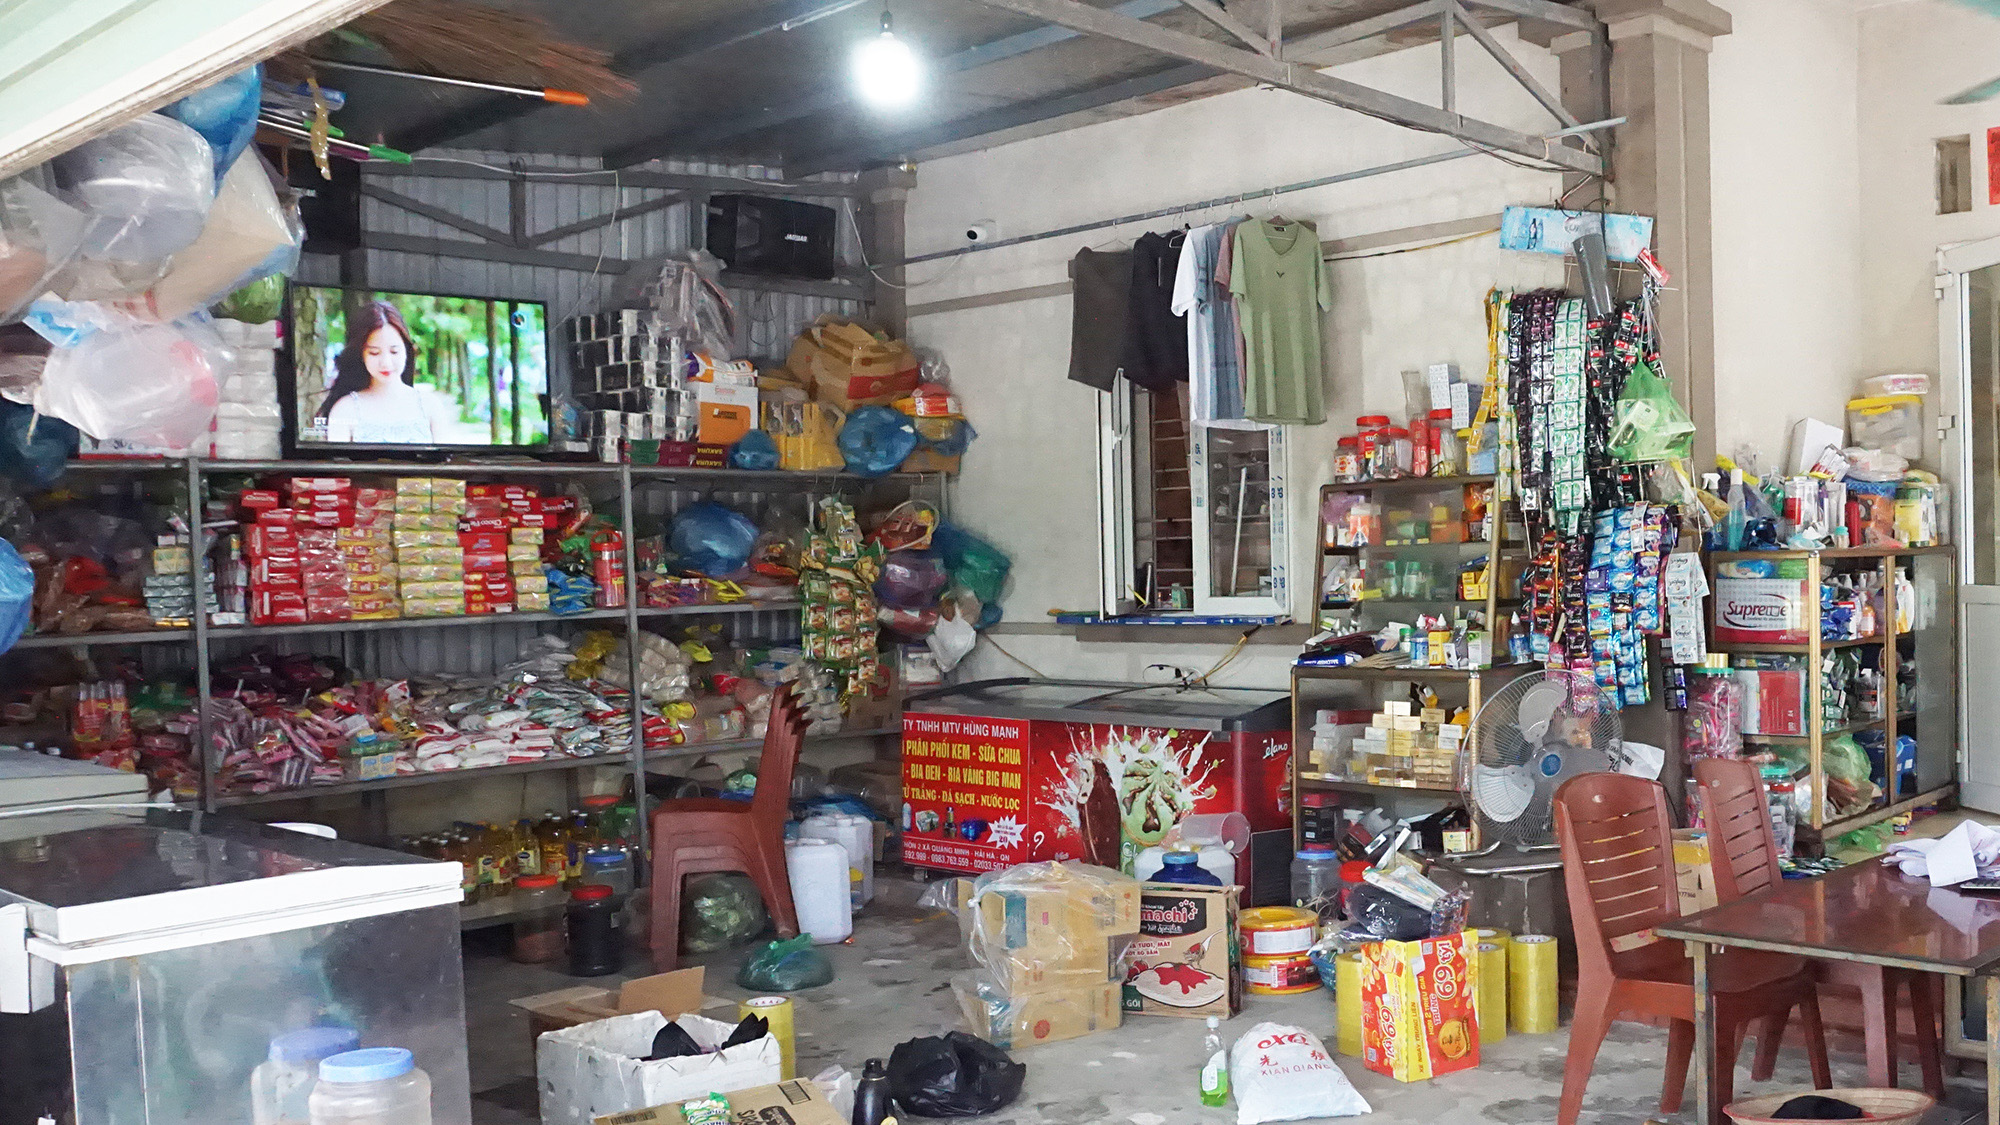 Nhiều gia đình tại thôn đảo Trần đã mở được cửa hàng tạp hóa và sắm sửa đầy đủ các vật dụng gia đình, từng bước ổn định cuộc sống.